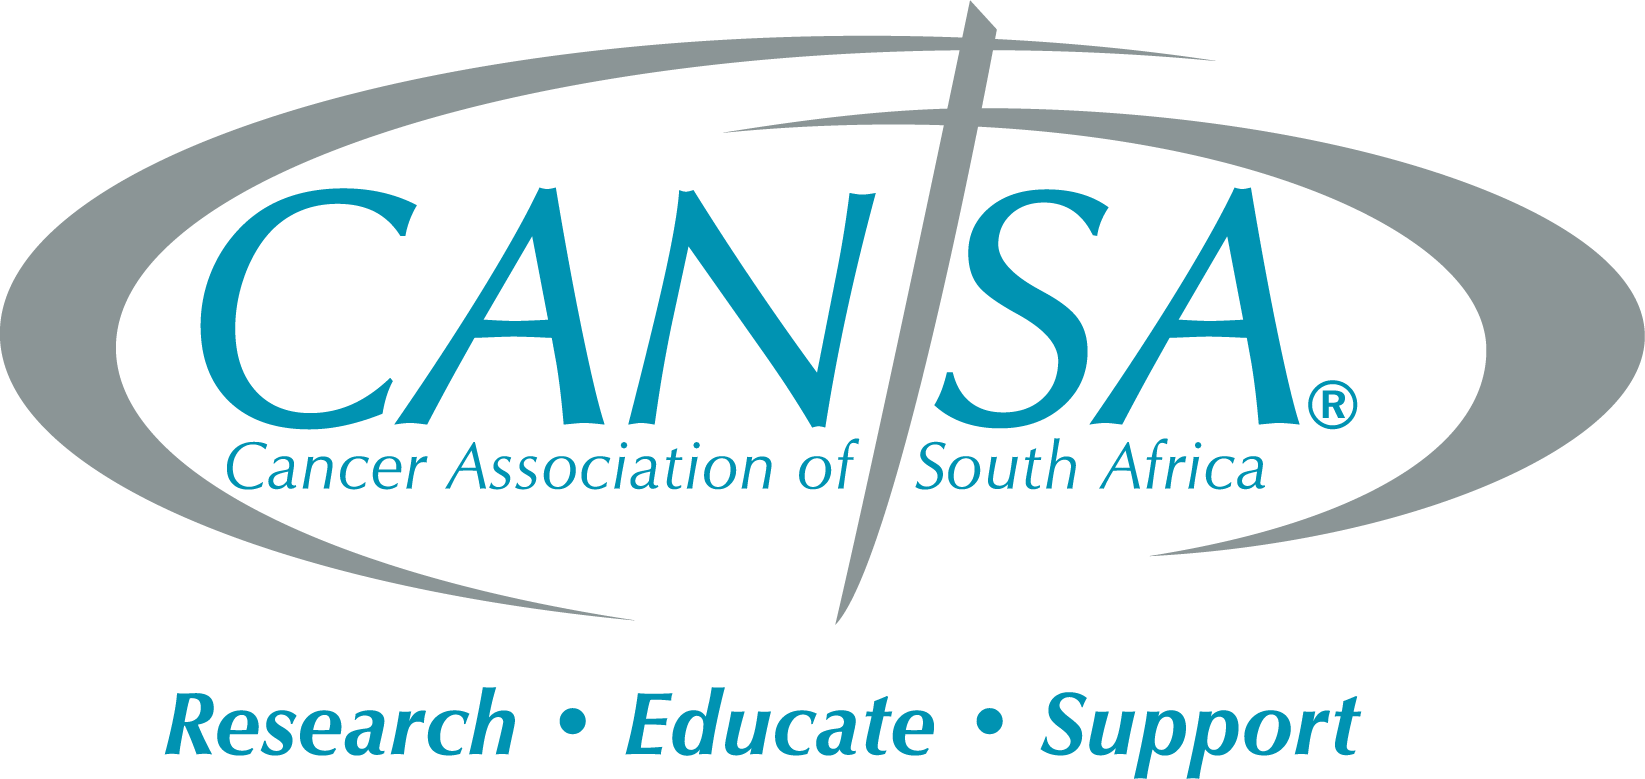 Cancer Association of South Africa - Johannesburg Gauteng South Africa